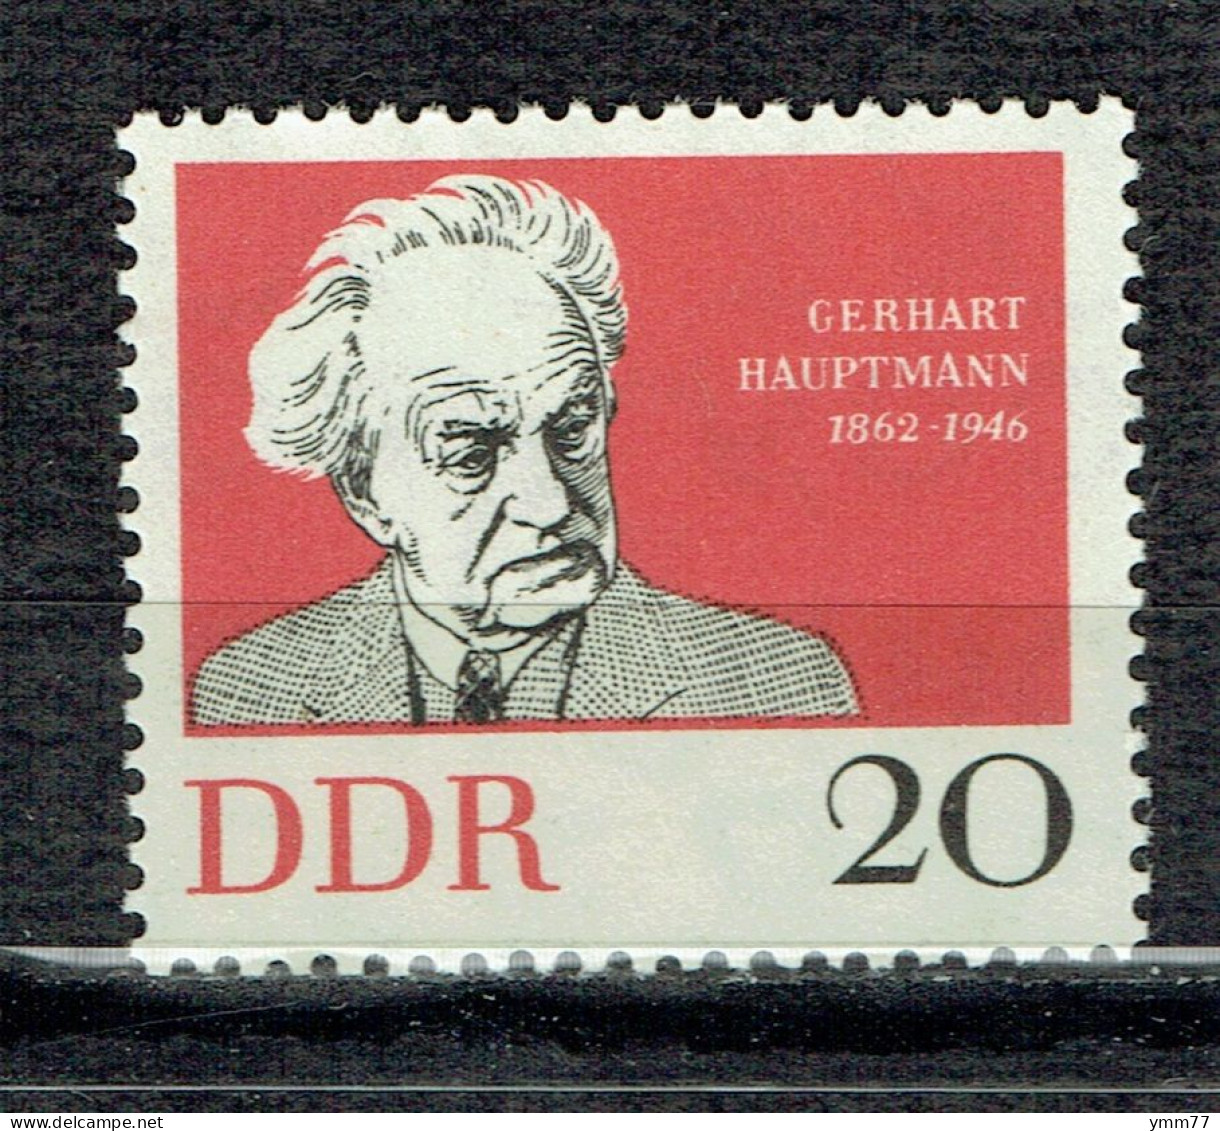 Centenaire De La Naissance De L'écrivain Gerhart Hauptmann - Unused Stamps